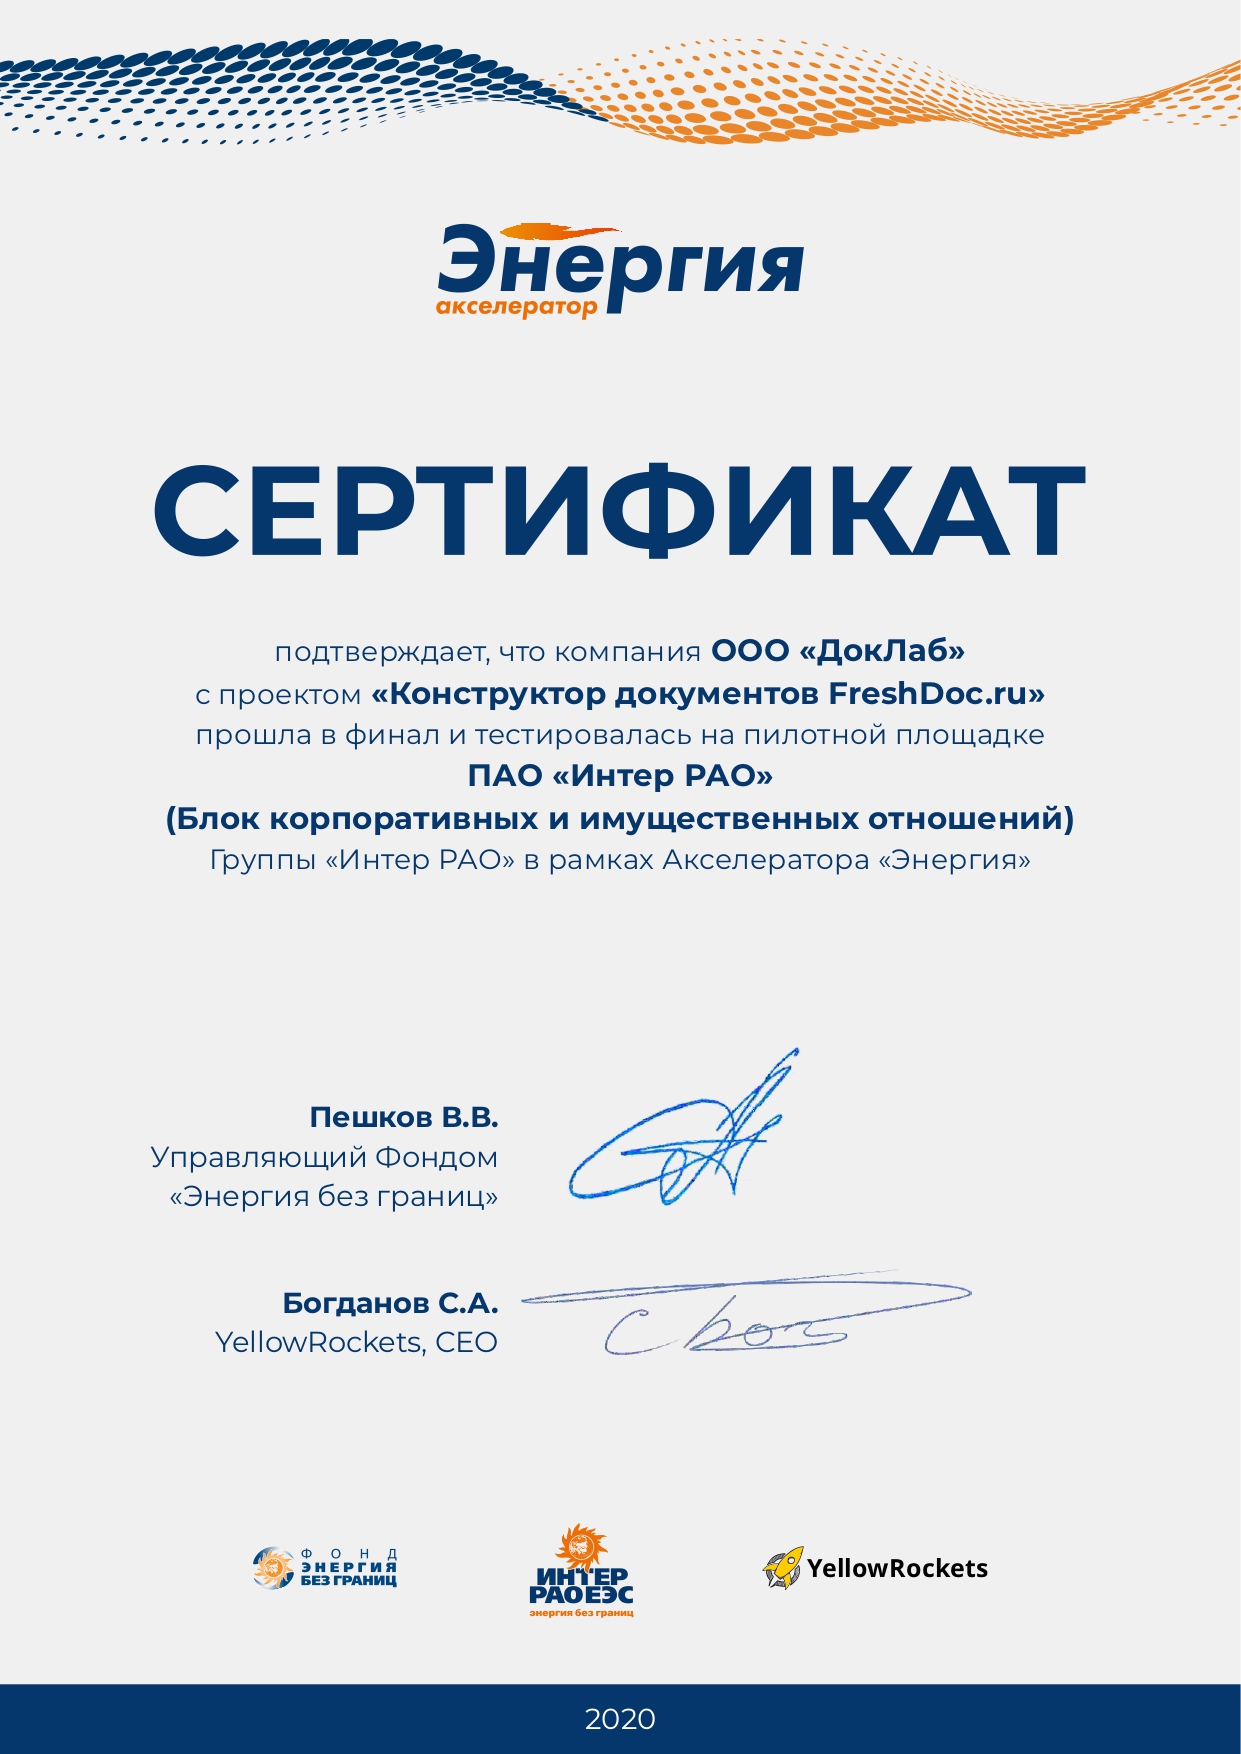 Сертификат участника «Акселератор энергия» БКиО